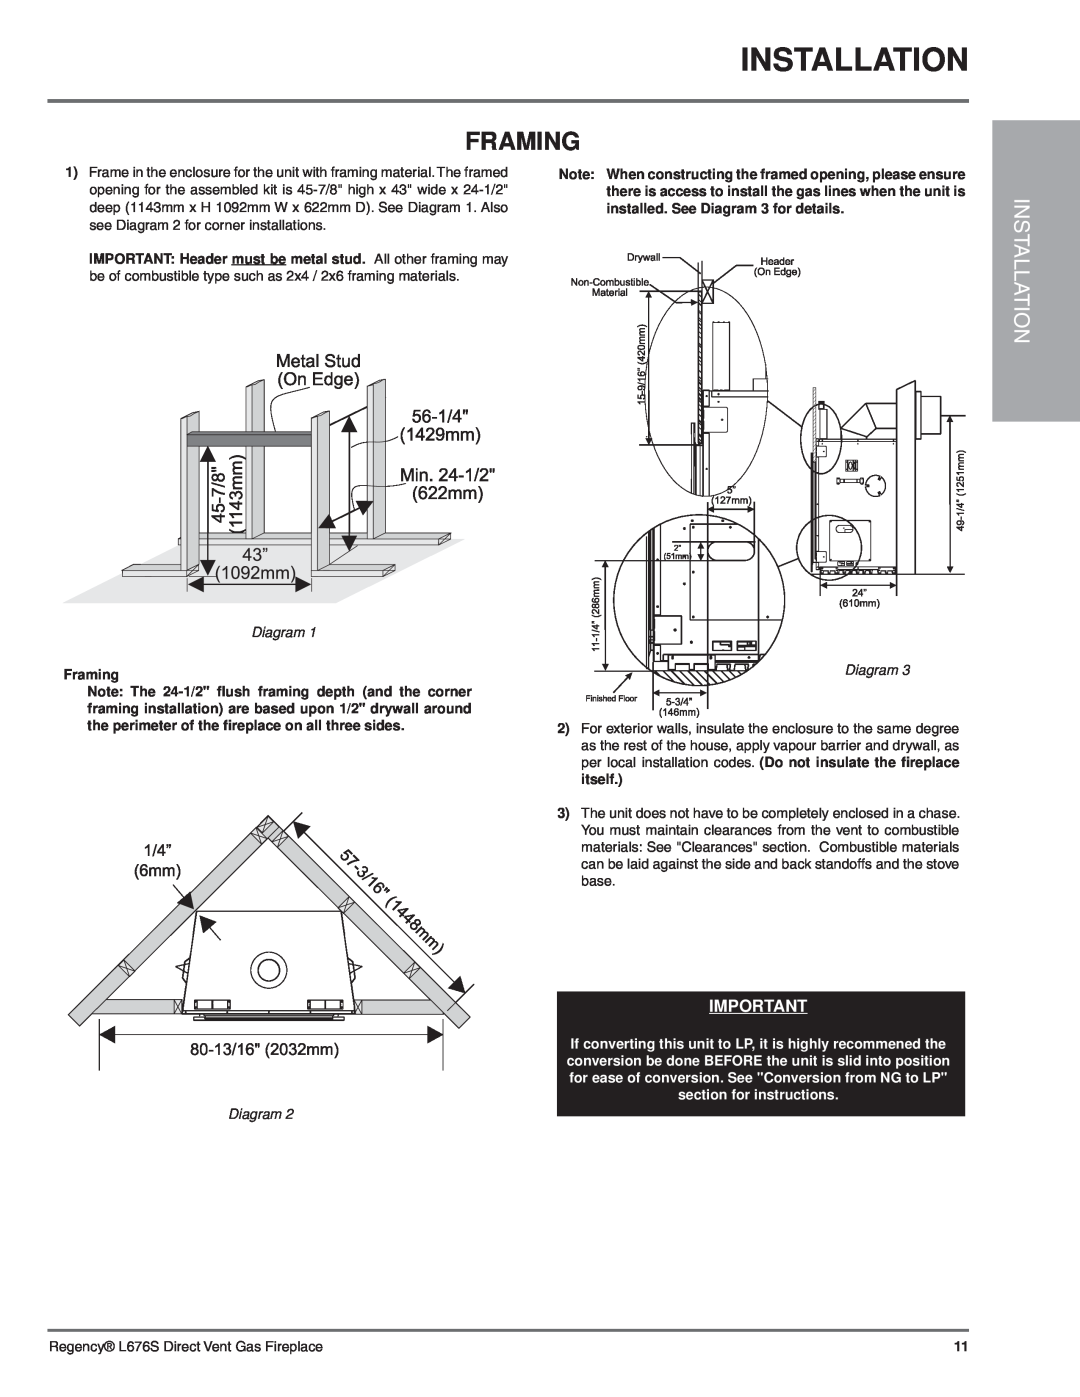 Regency L676S-NG1 installation manual Installation, Framing, Diagram 